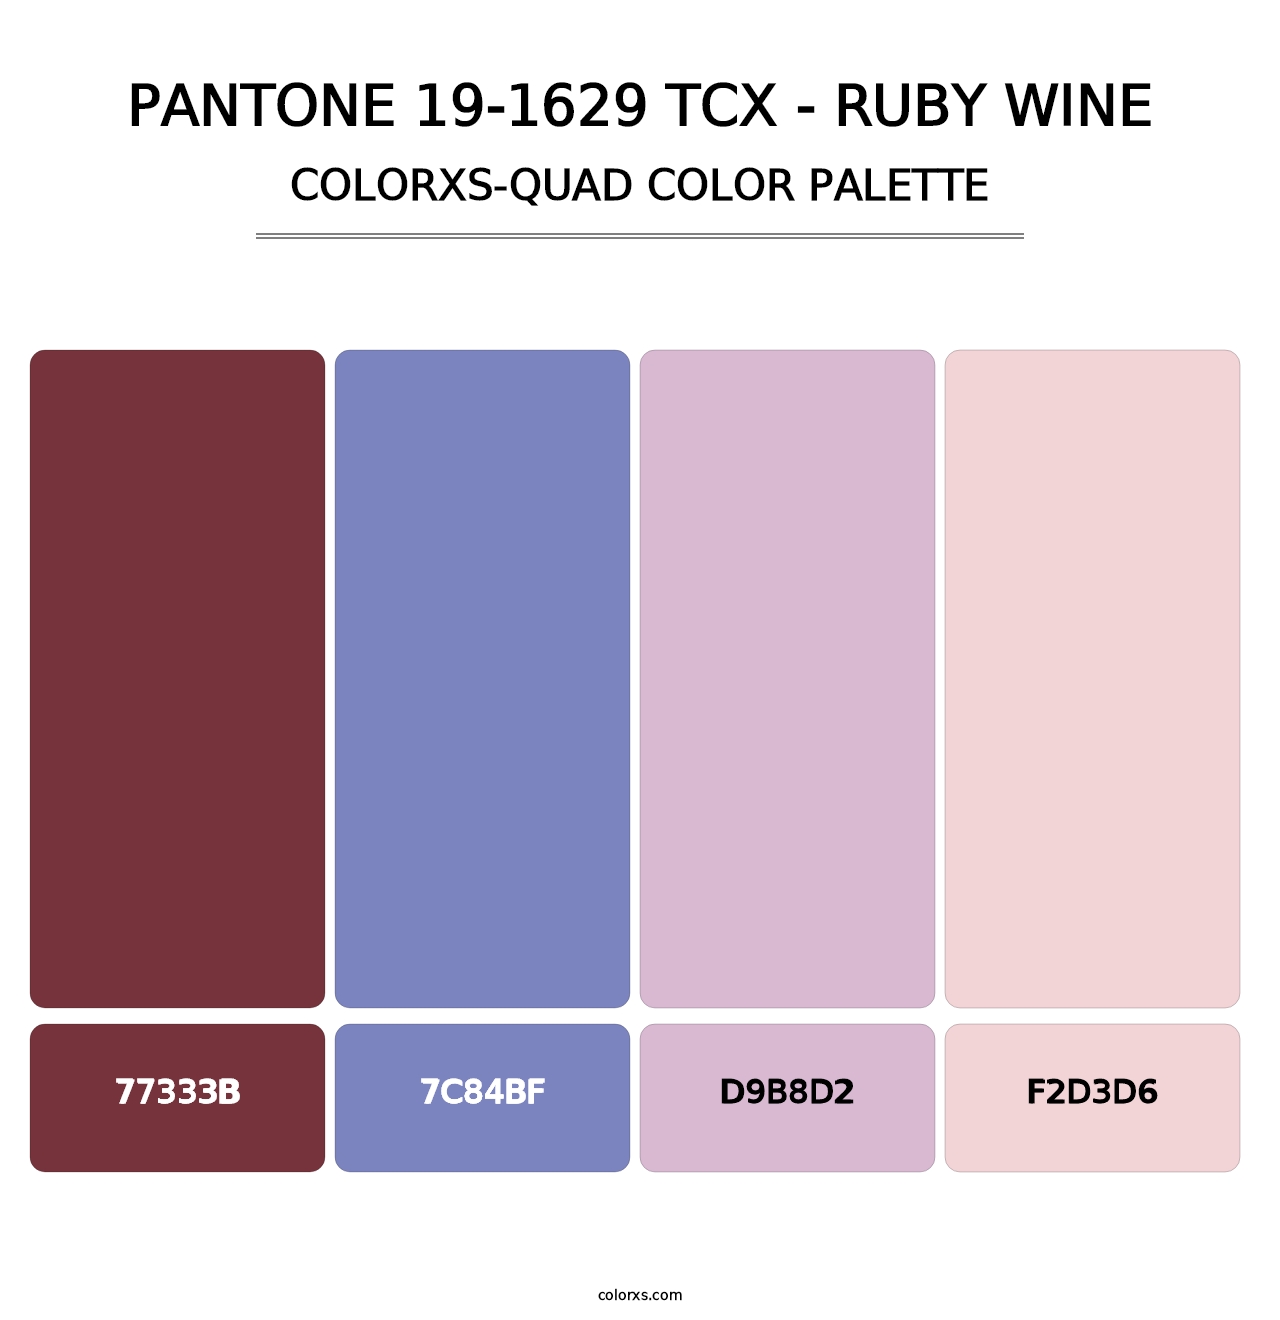 PANTONE 19-1629 TCX - Ruby Wine - Colorxs Quad Palette